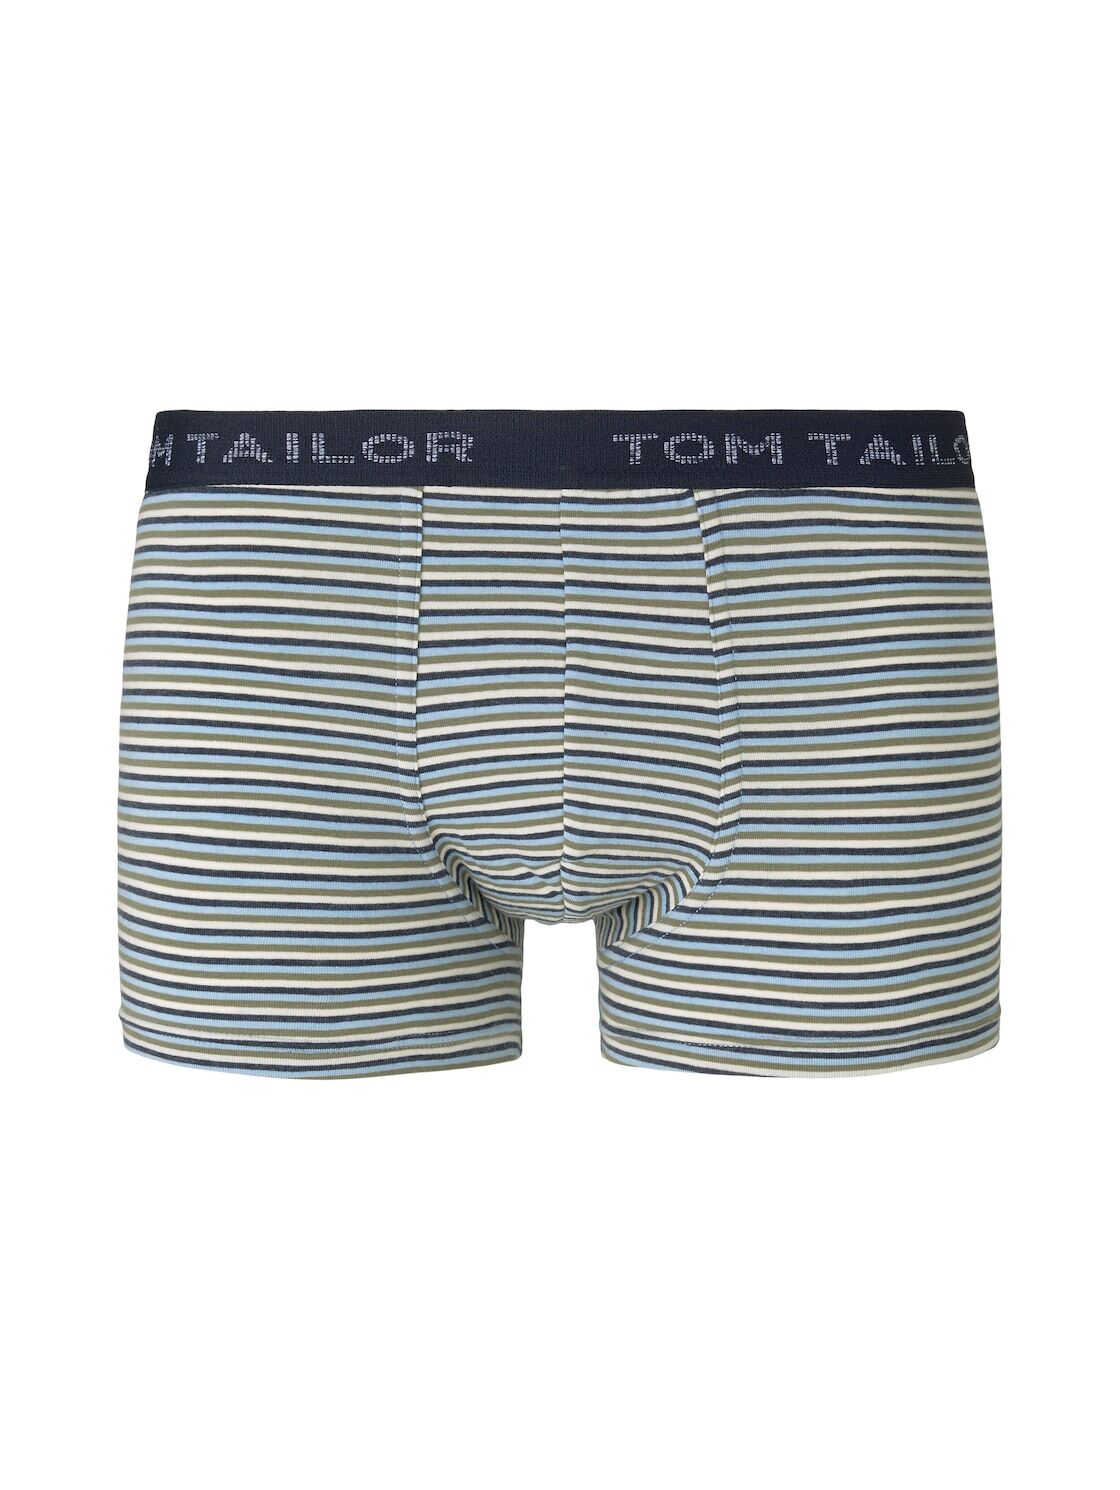 TOM TAILOR Herren Gestreifte Hip Pants, blau, Gr.XL/7